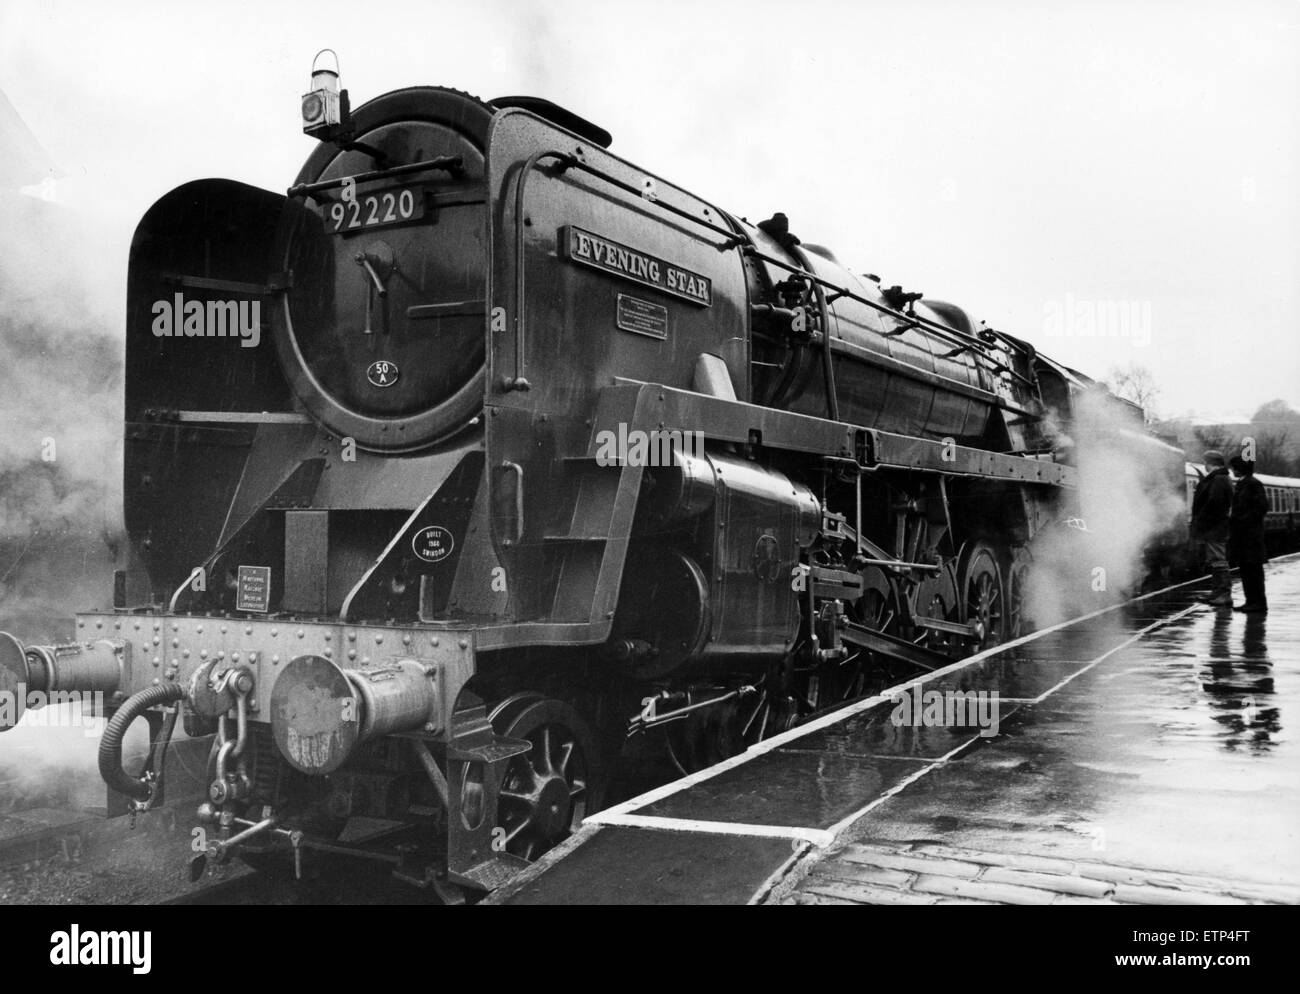 92220 stella della sera, l'ultima locomotiva a vapore costruita per British Rail nel 1960, sarà in esecuzione sul Grosmont a Pickering linea, martedì e durante i fine settimana, per il prossimo a settimane, per contrassegnare il centocinquantesimo anniversario della Whitby Pickering e ferrovia. Nella foto Foto Stock